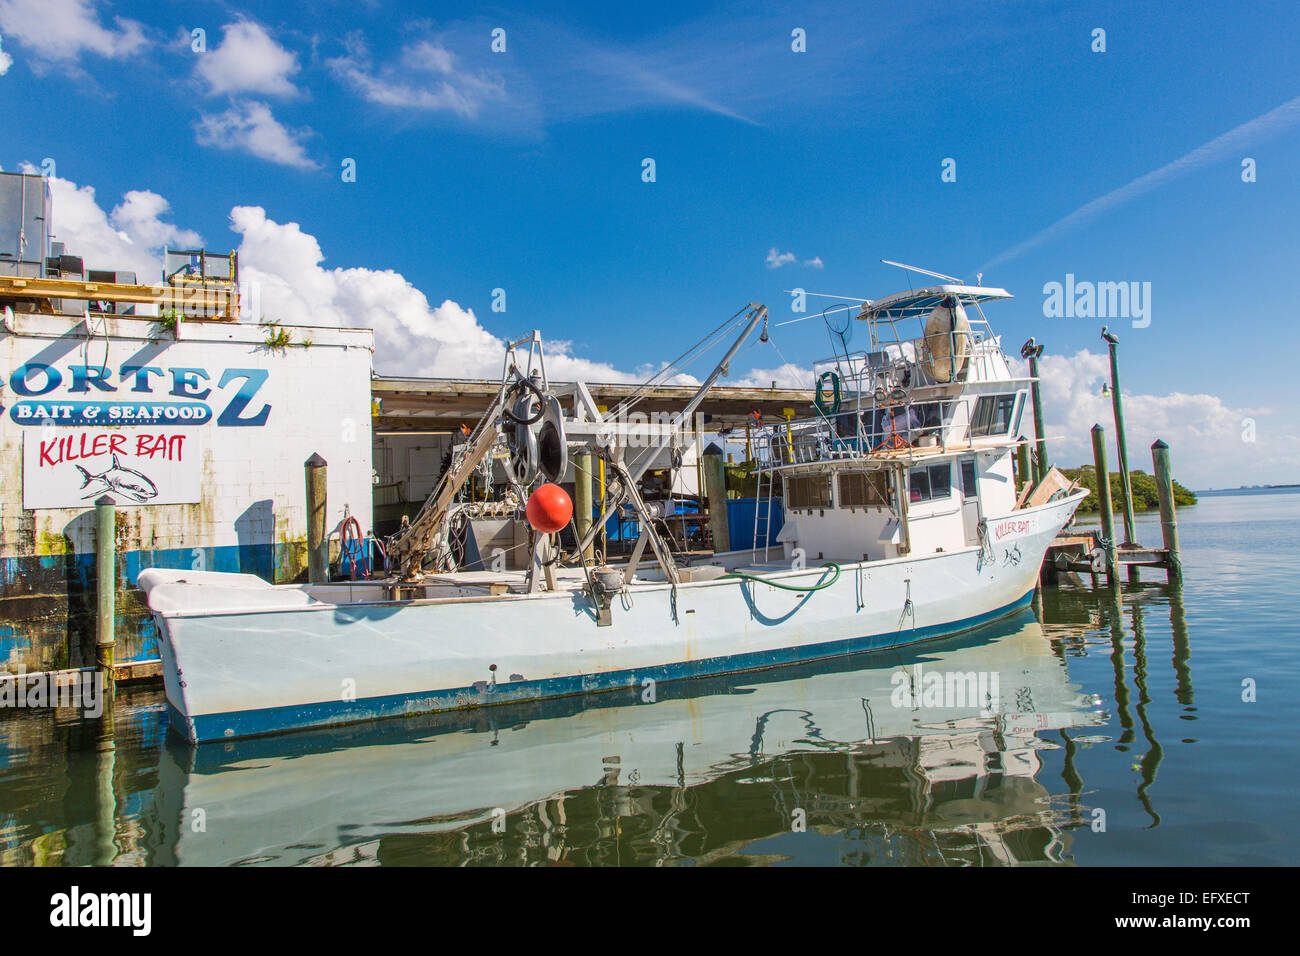 Les bateaux de pêche dans le vieux village de pêche commerciale historique de Cortez dans la baie de Sarasota en Floride Banque D'Images